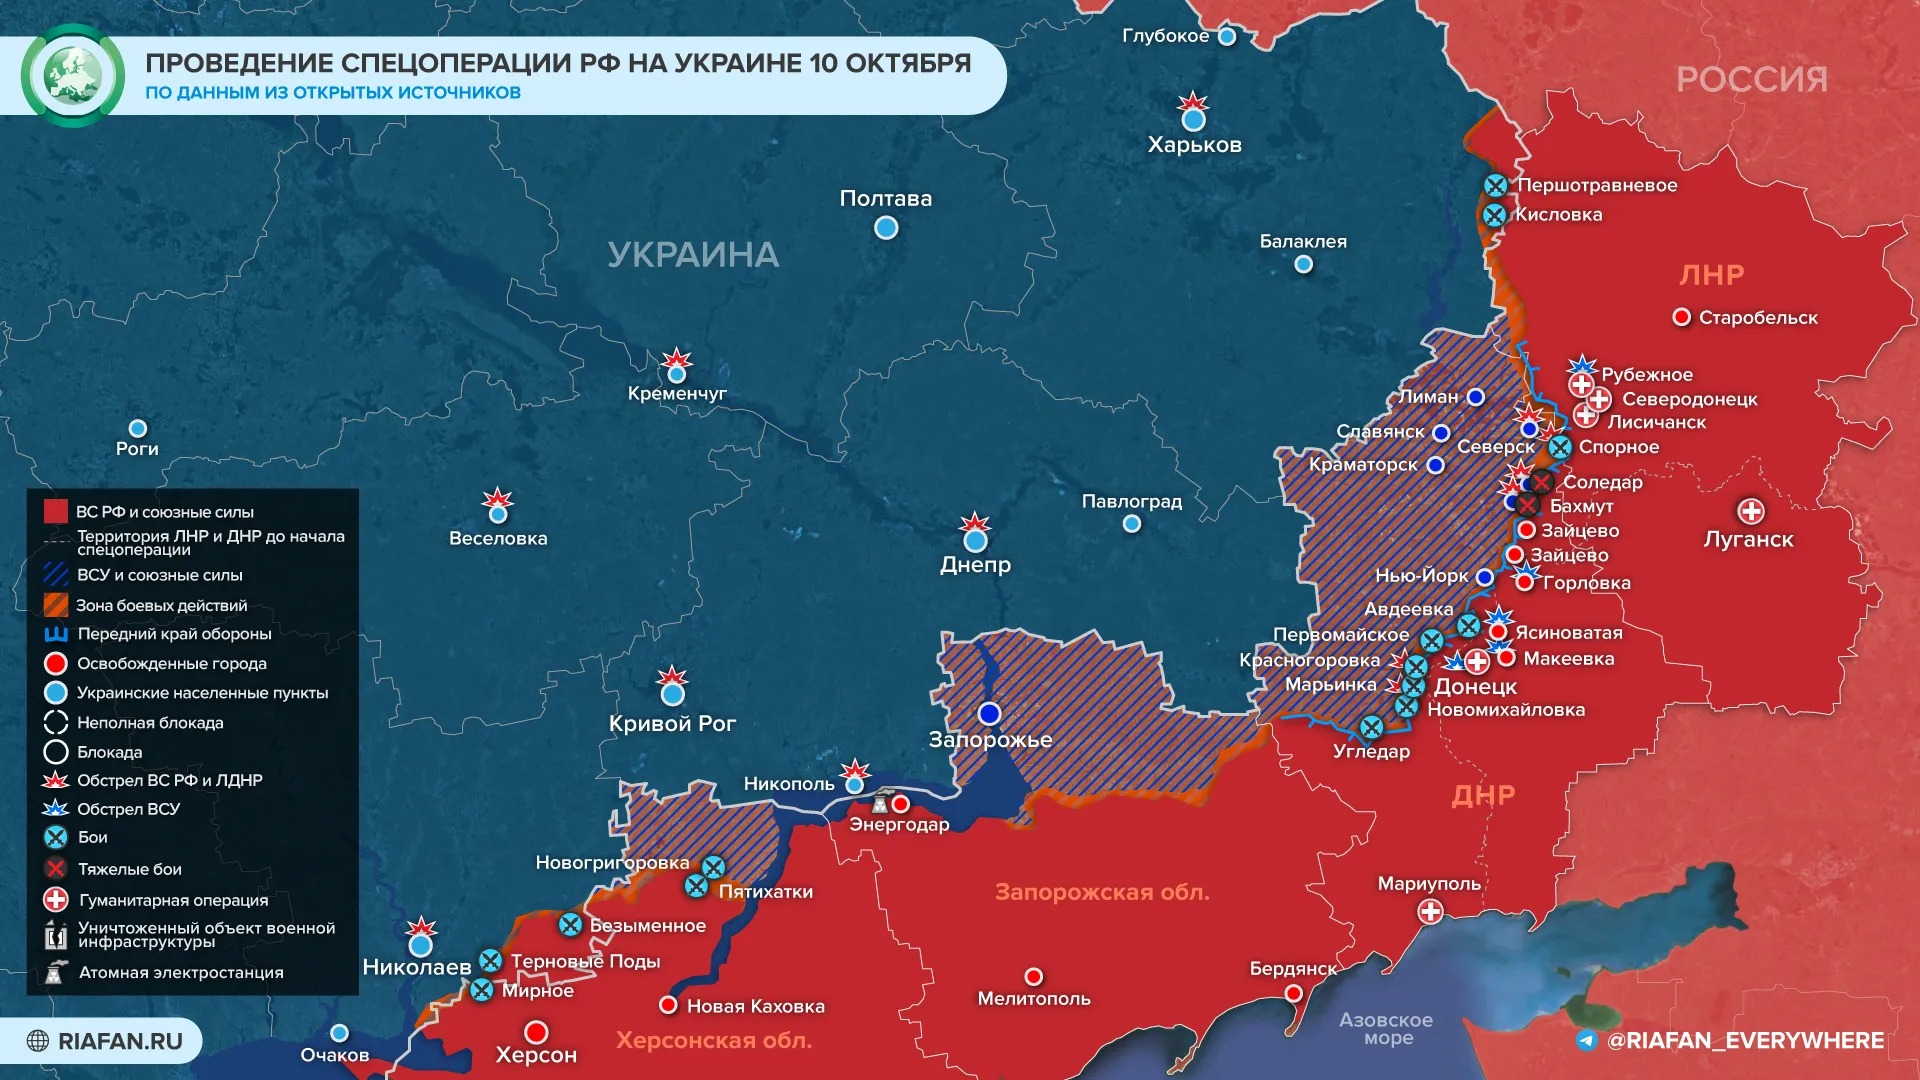 «Возмездие началось!»: последние новости военной спецоперации на Украине на сегодня 11 октября 2022 года